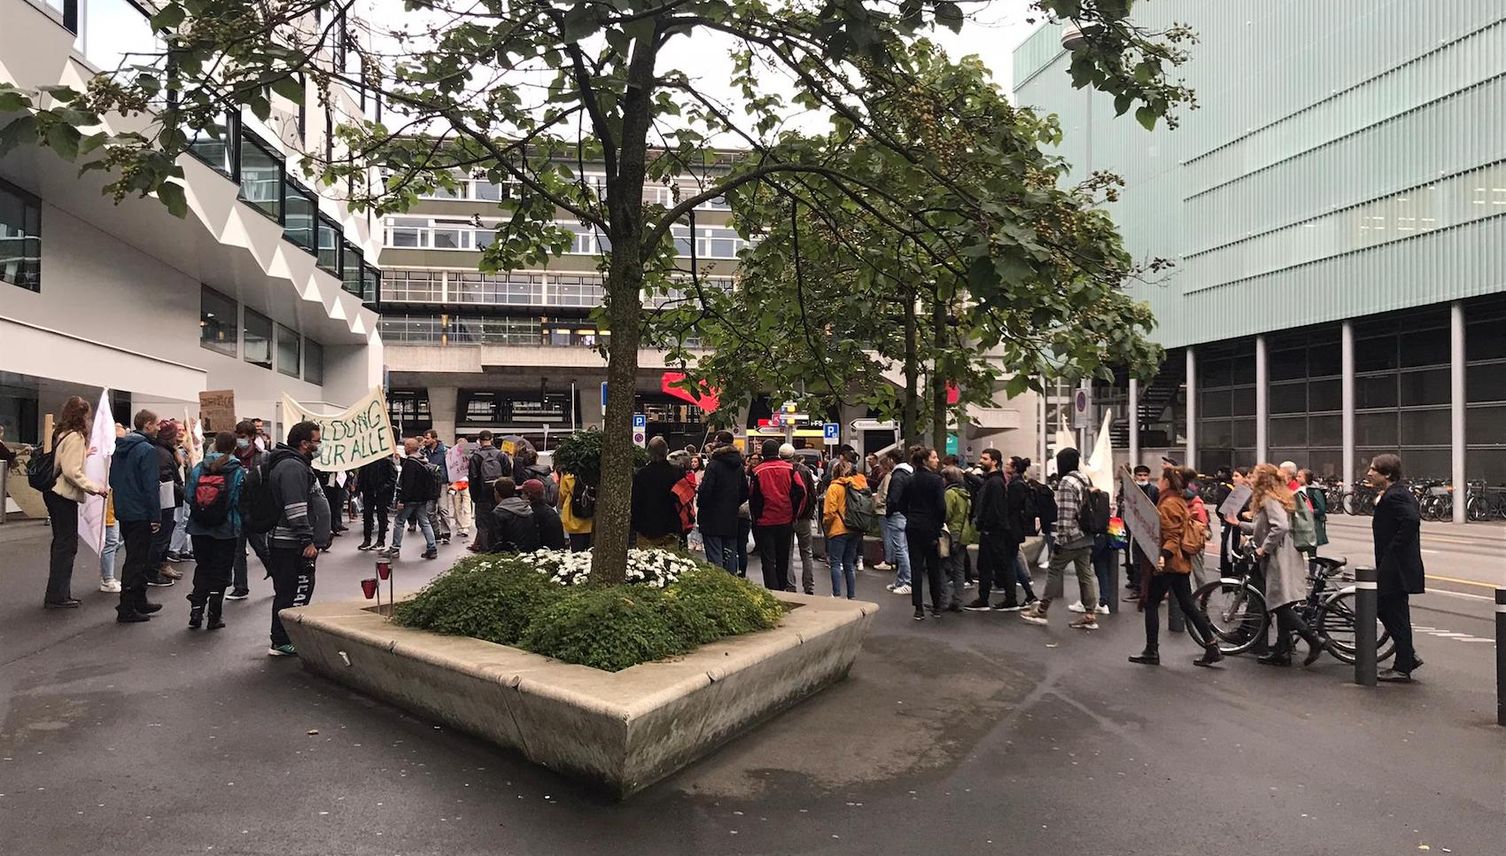 Rangelei an Corona-Demo vor Uni Luzern – fünf Strafanzeigen